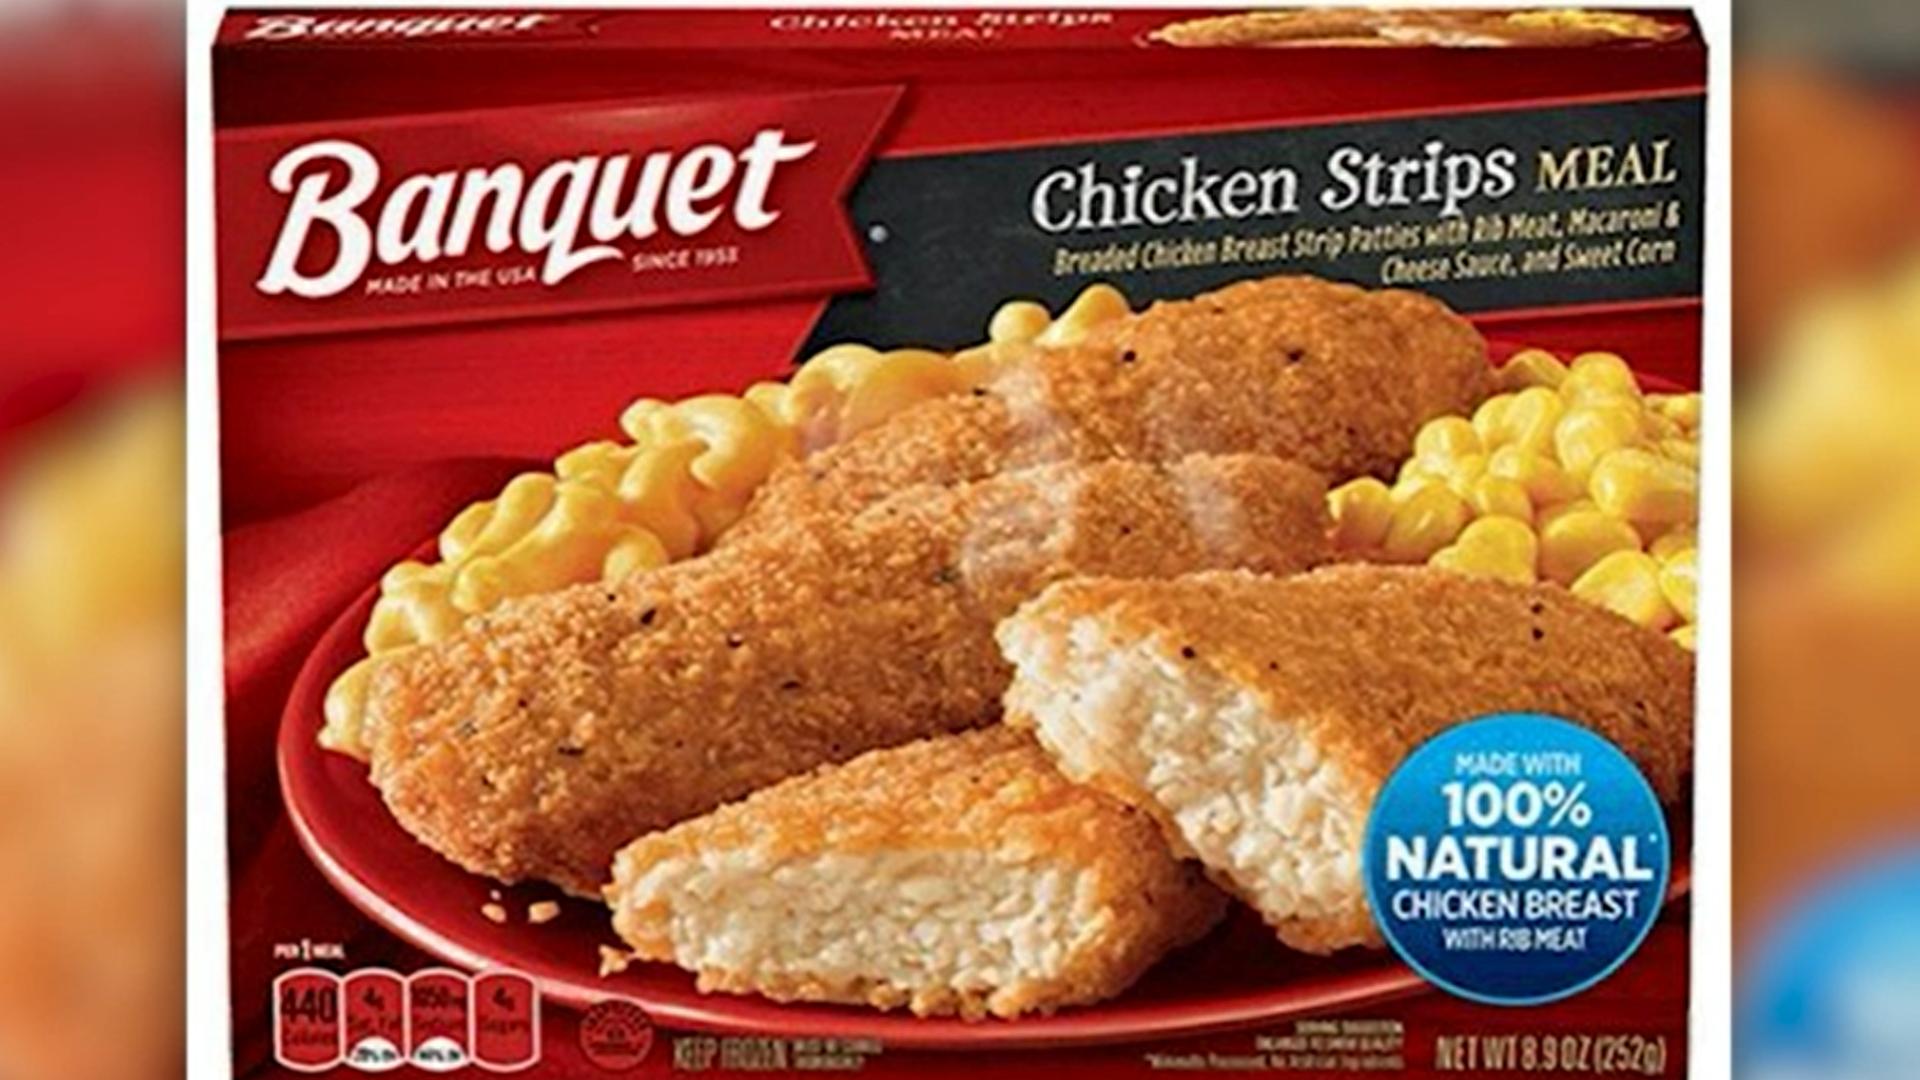 Banquet frozen chicken strips meals recalled for plastic concerns ...